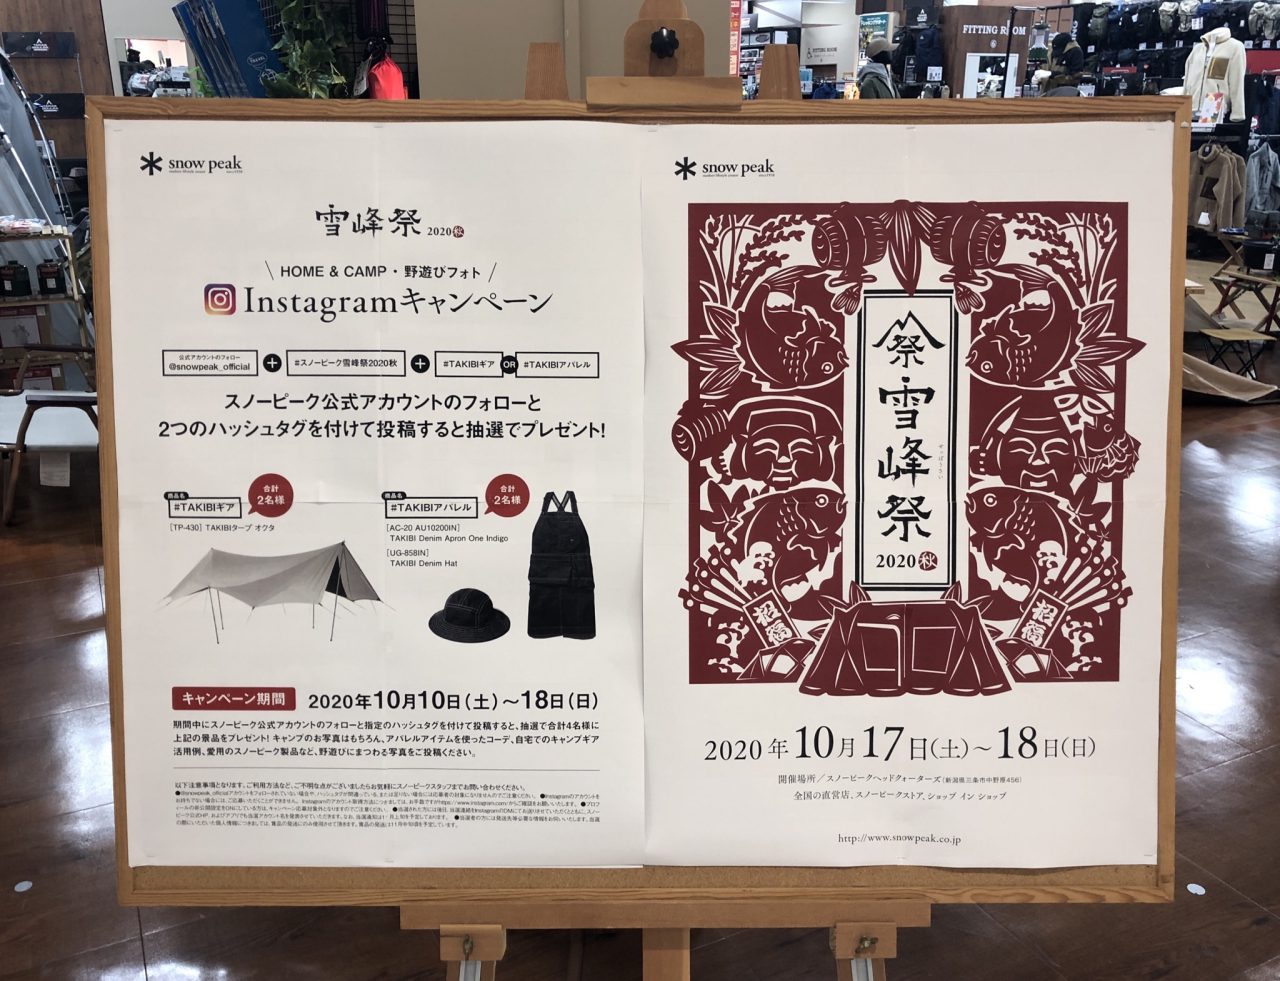 スポーツオーソリティ木更津店で見かけた雪峰祭の看板